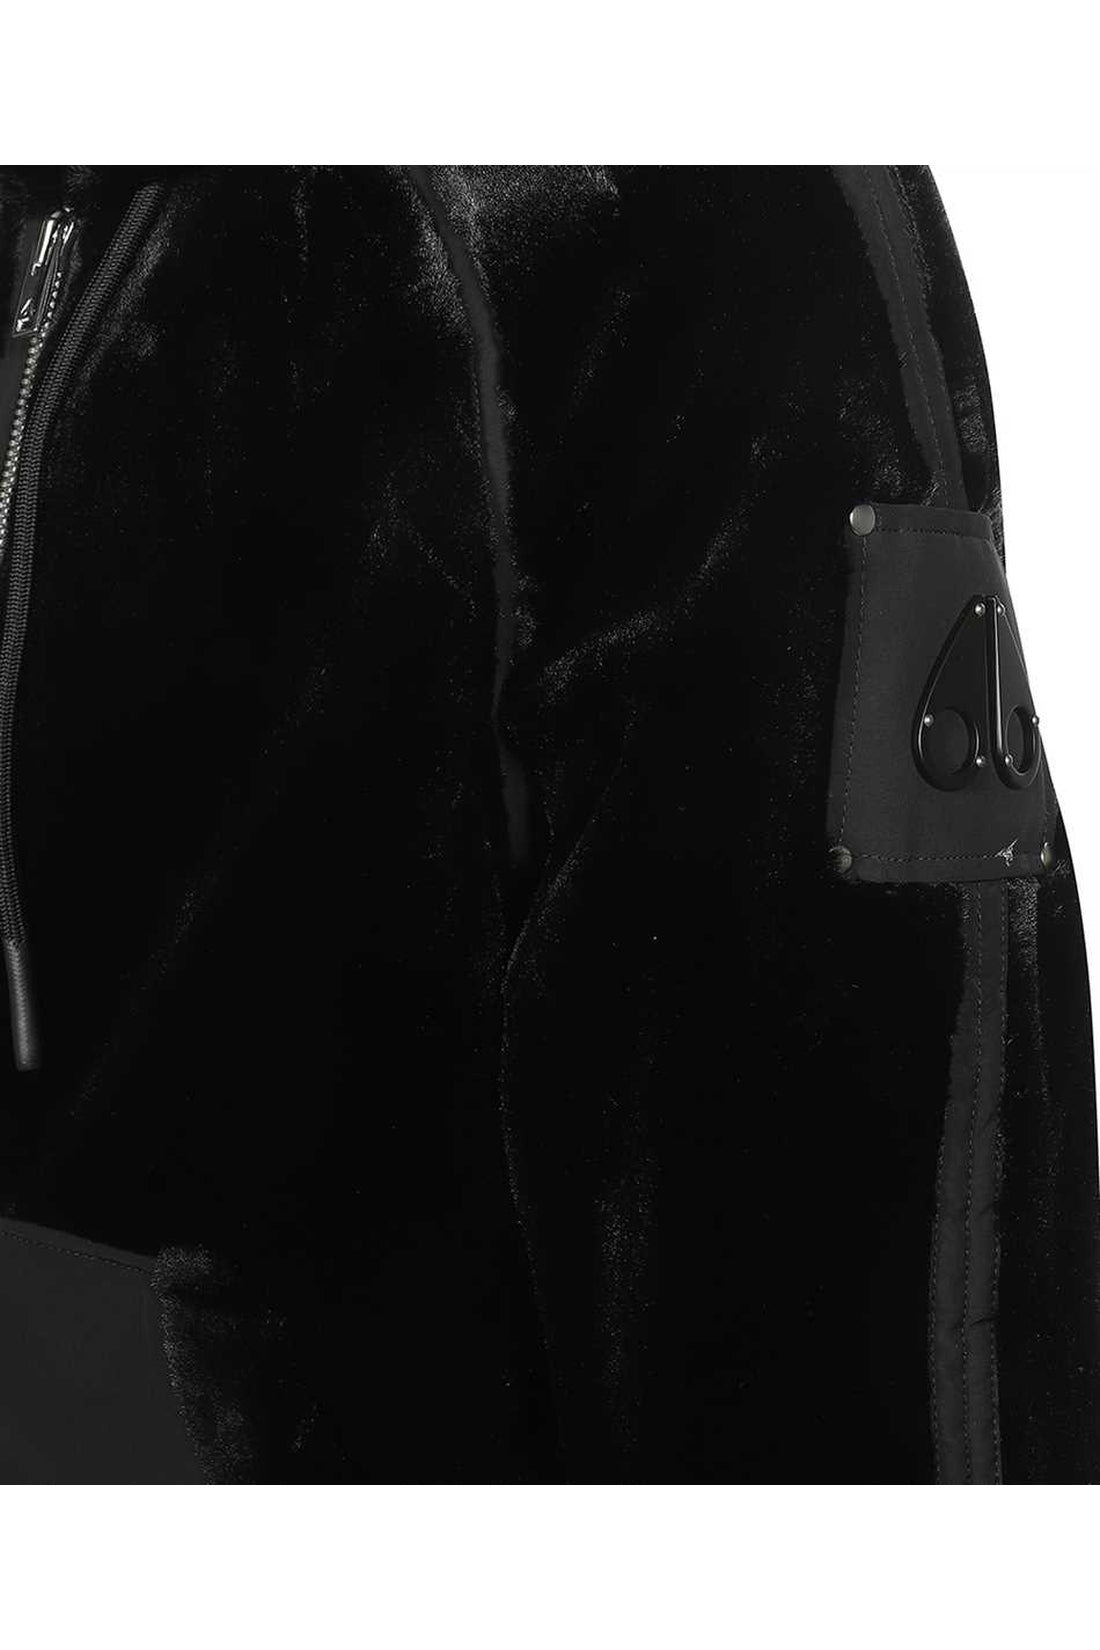 Moose Knuckles-OUTLET-SALE-Faux fur jacket-ARCHIVIST